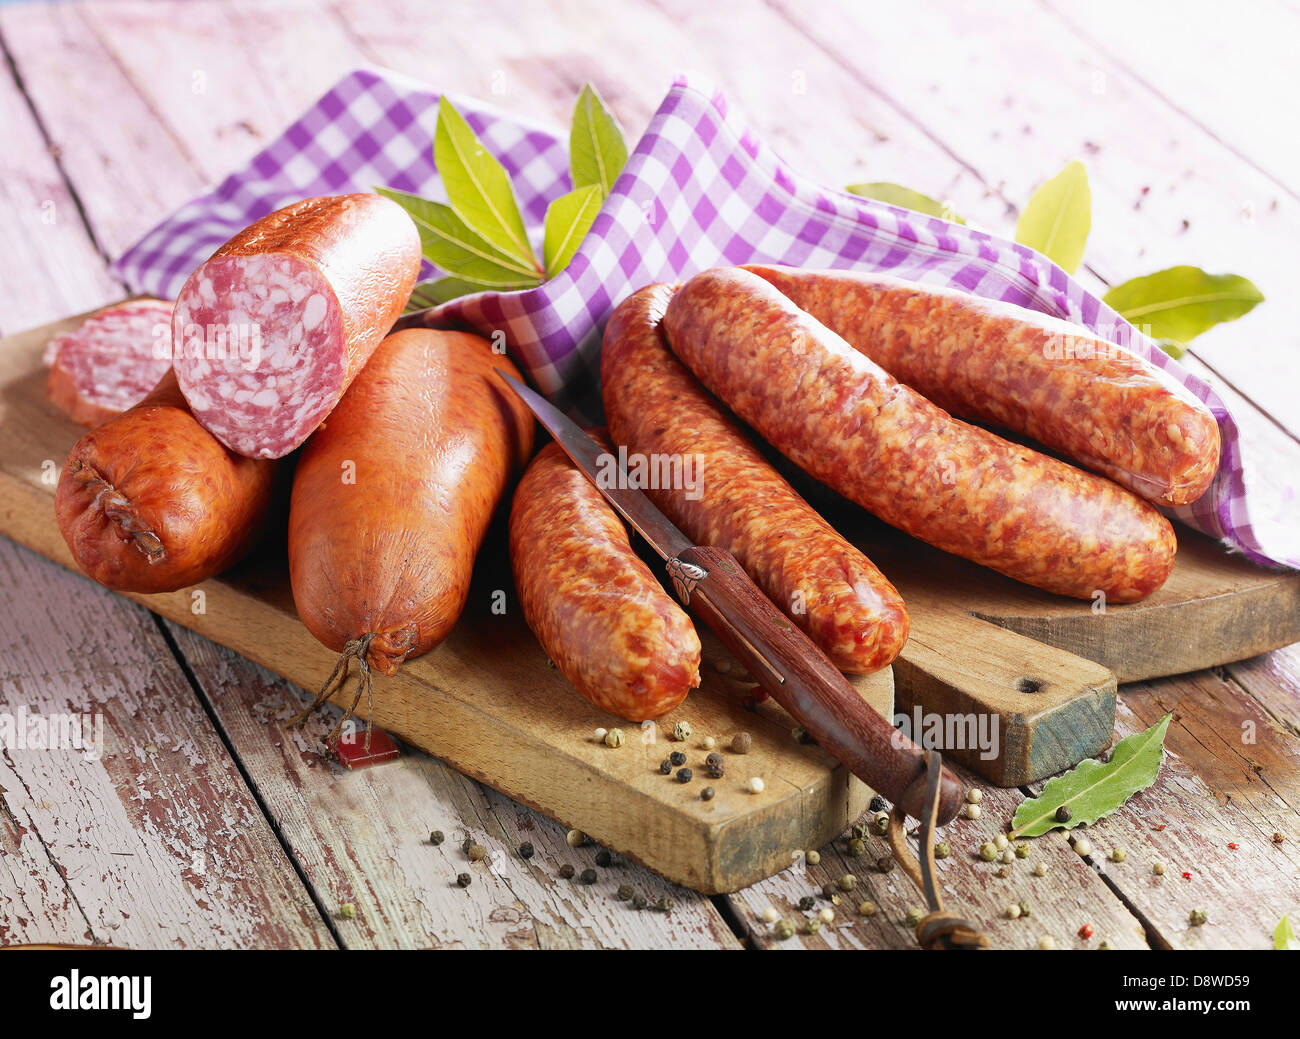 Morteau and Montbéliard sausages Stock Photo